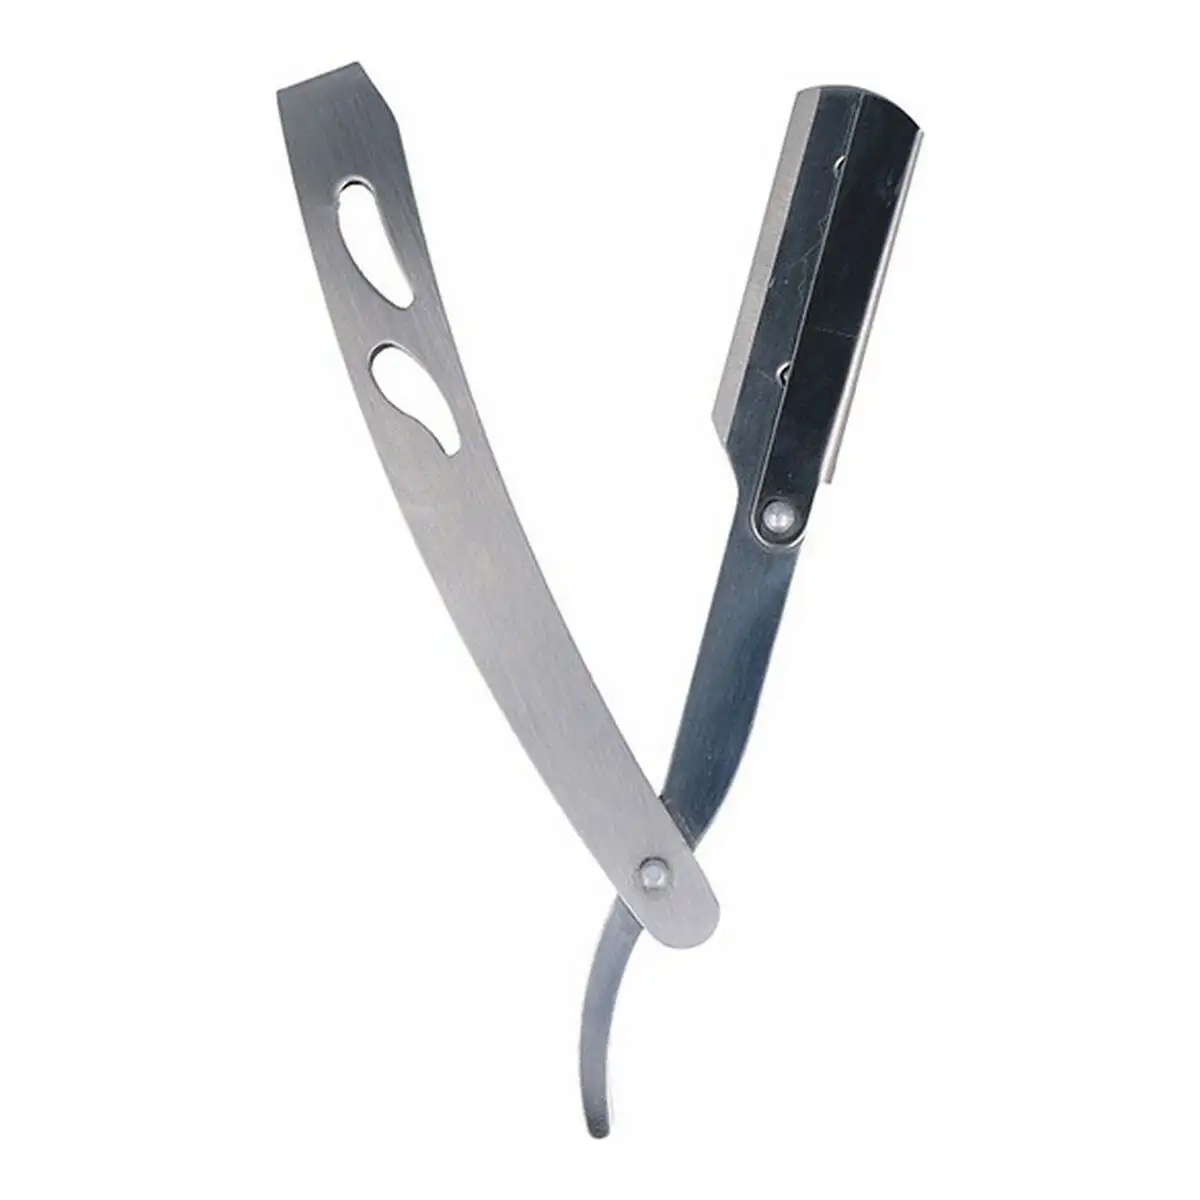 Pocketknife metal_3091. DIAYTAR SENEGAL - Votre Plateforme Shopping de Confiance. Naviguez à travers nos rayons et choisissez des produits fiables qui répondent à vos besoins quotidiens.